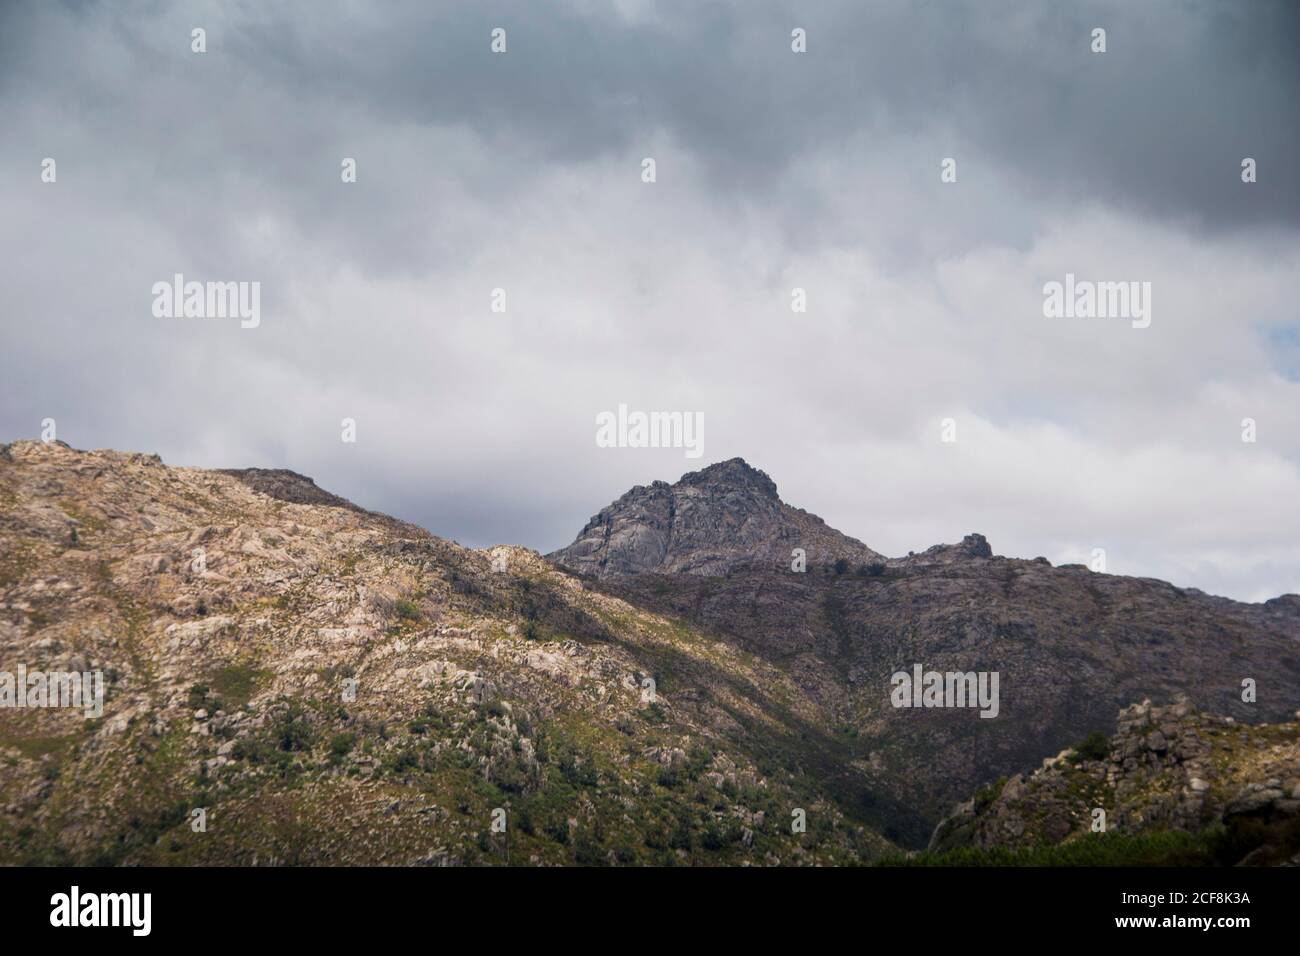 Vetta di montagna che mostra in lontananza, dietro più montagne e valli, ombreggiate da un cielo nuvoloso Foto Stock